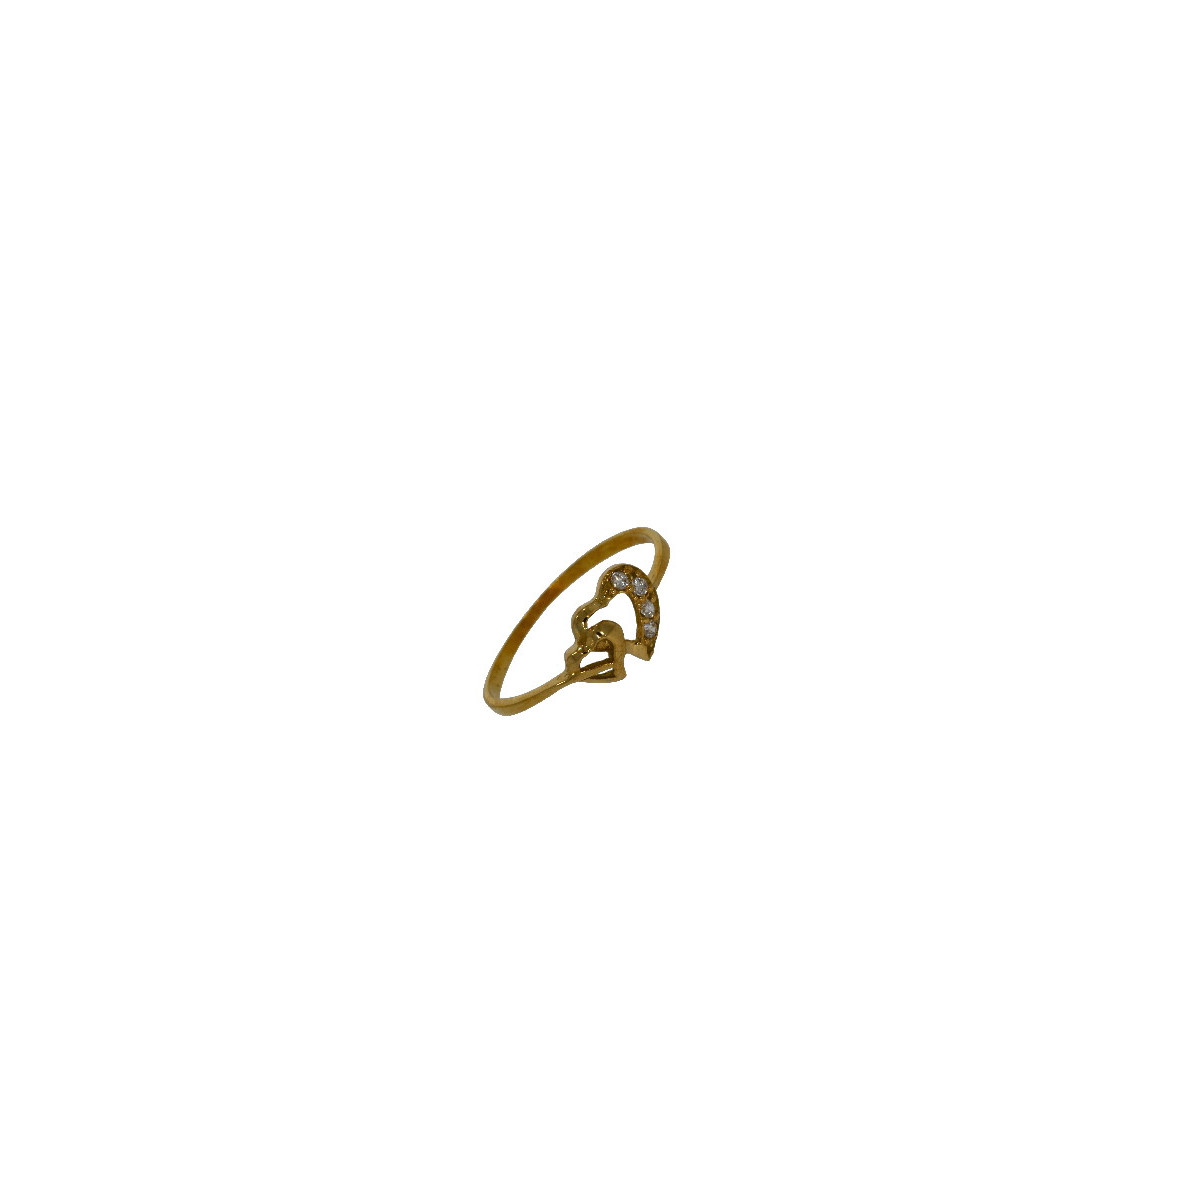 Anillo con Corazon Doble de Oro Circon - AN11 1,30 +10$